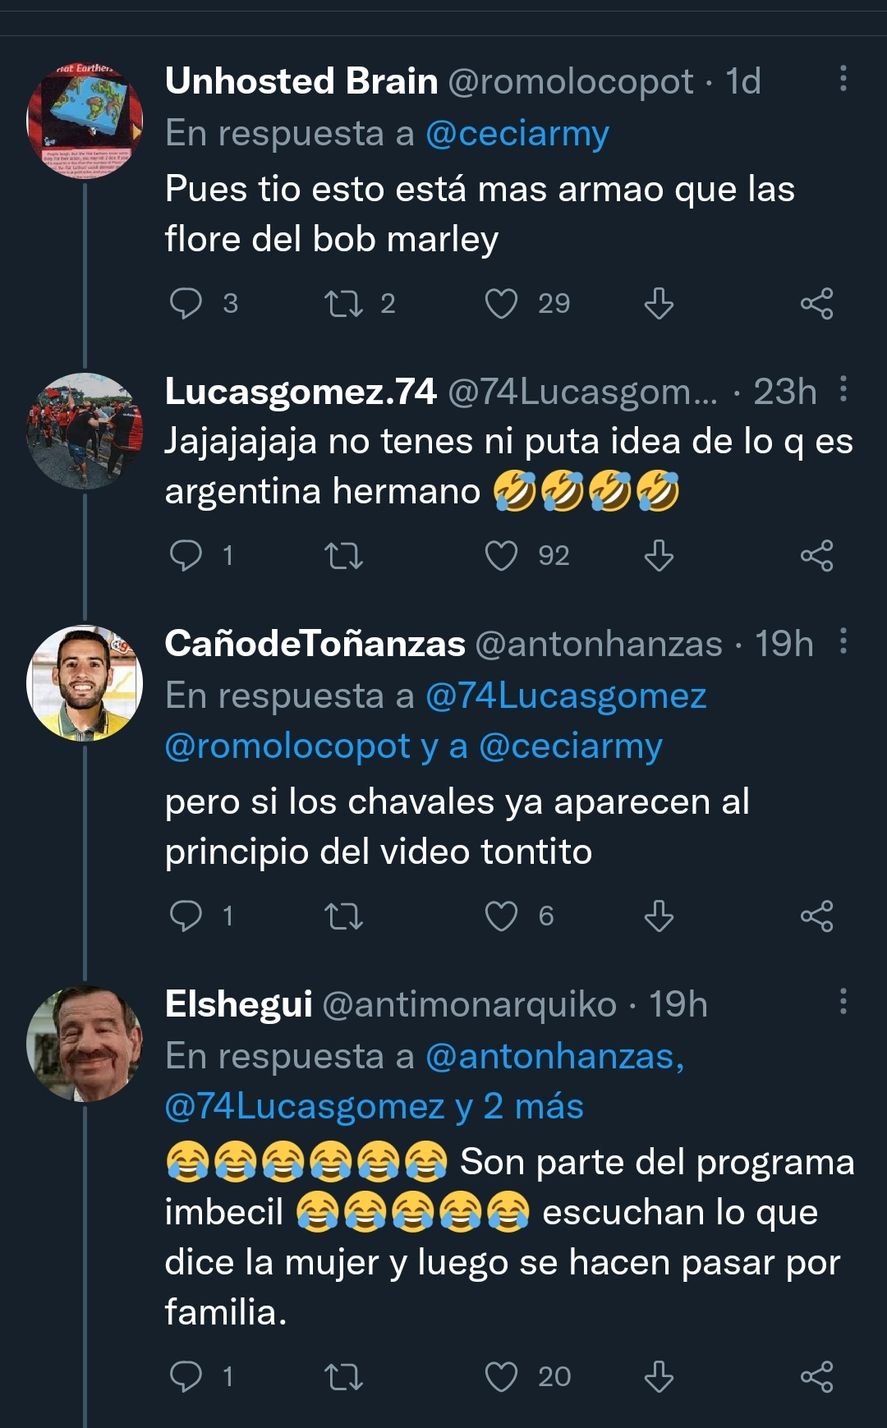 La guerra desatada en Twitter entre usuarios argentinos y españoles por la incomprensión y diferencia de sentido del humor ante un antiguo sketch de Pablo Granados y Pachu Peña. 